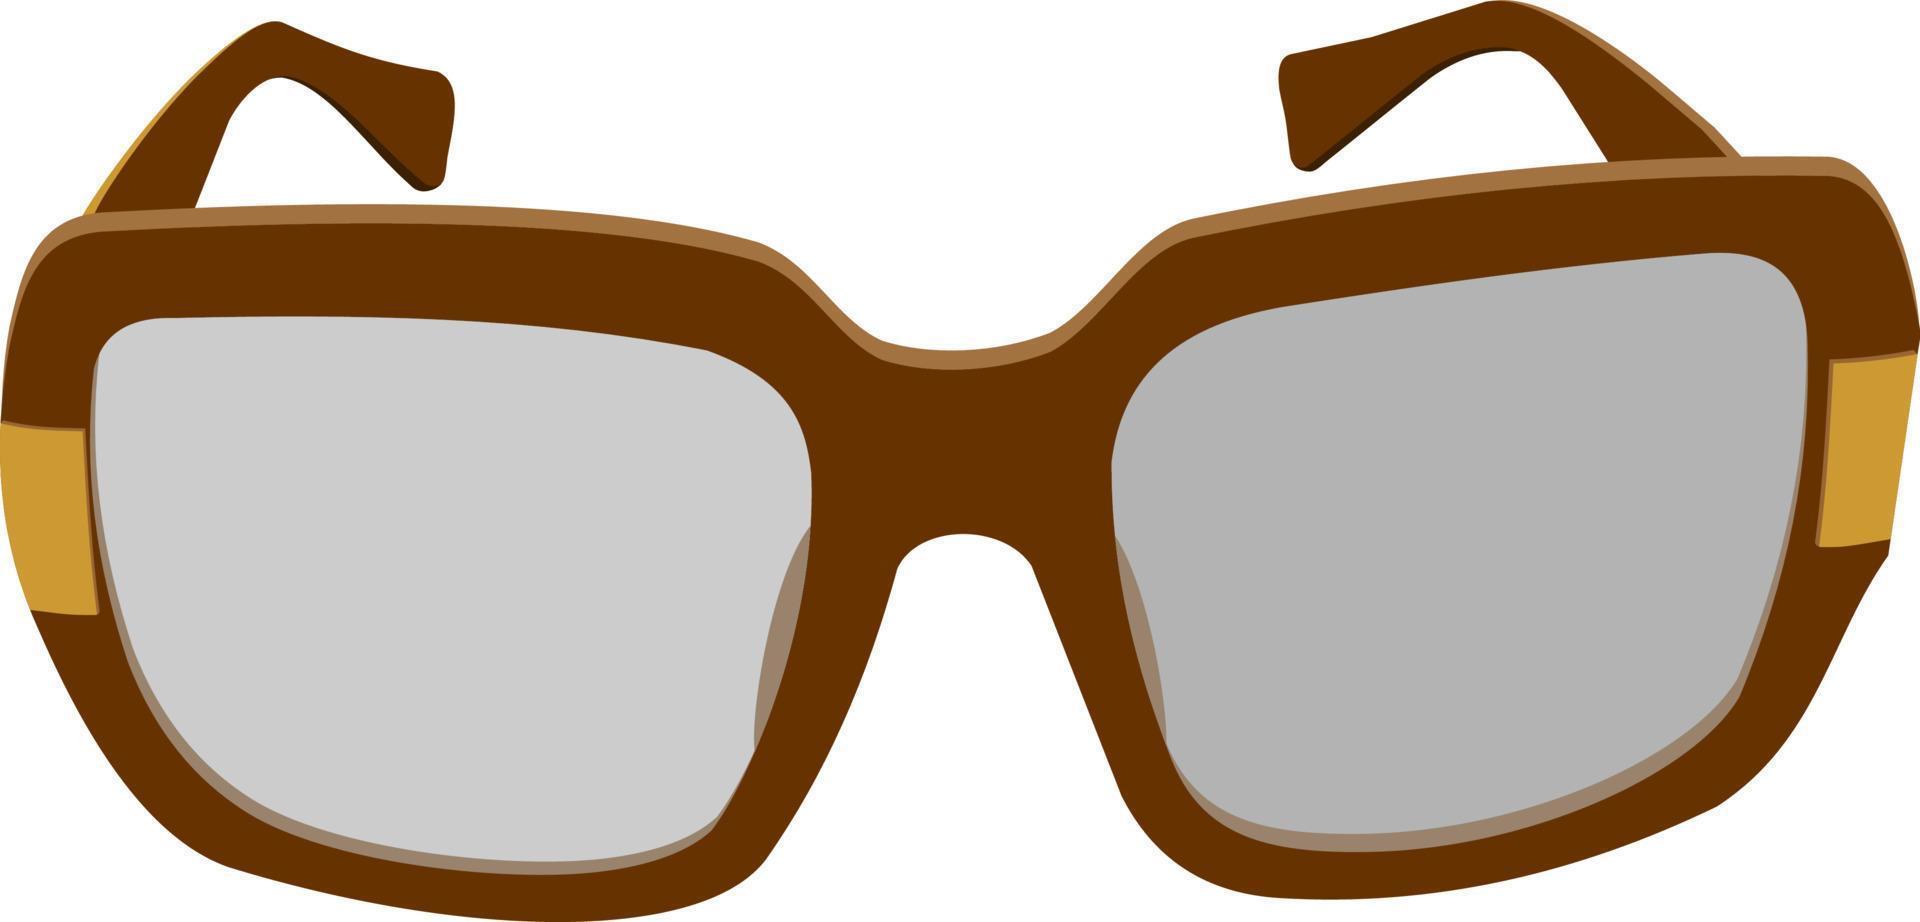 armações de óculos isoladas, óculos de leitura intactos, novos vetor